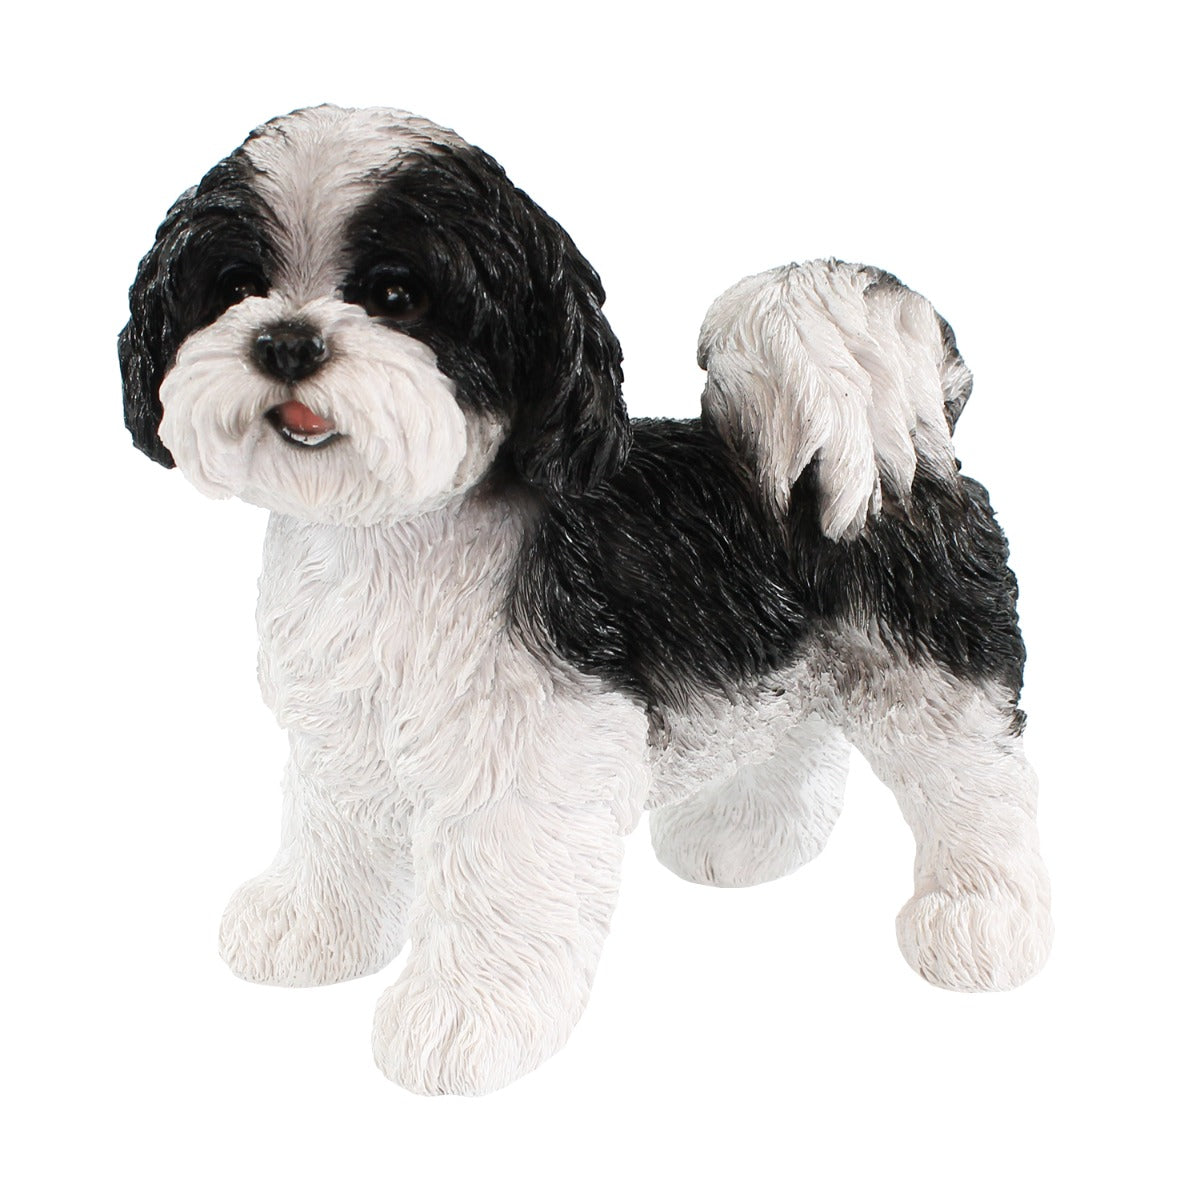 Hunde Figur Shih Tzu Welpe stehend schwarz-weiß Hund Tierfigur Hundefigur